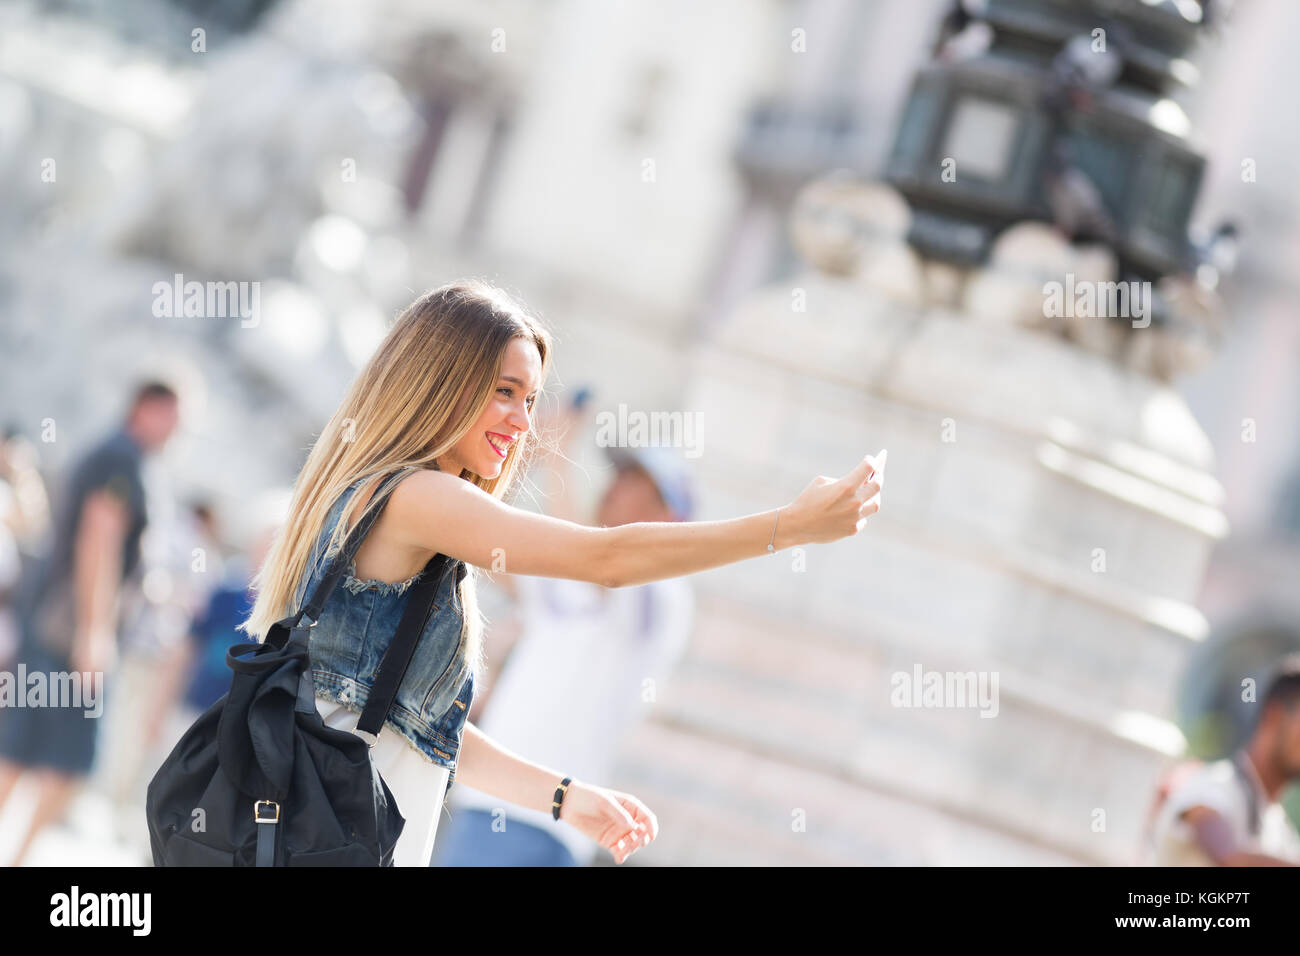 Jolie adolescente touristiques prenant une photo avec son téléphone mobile. Photo prise à Milan, Italie Banque D'Images